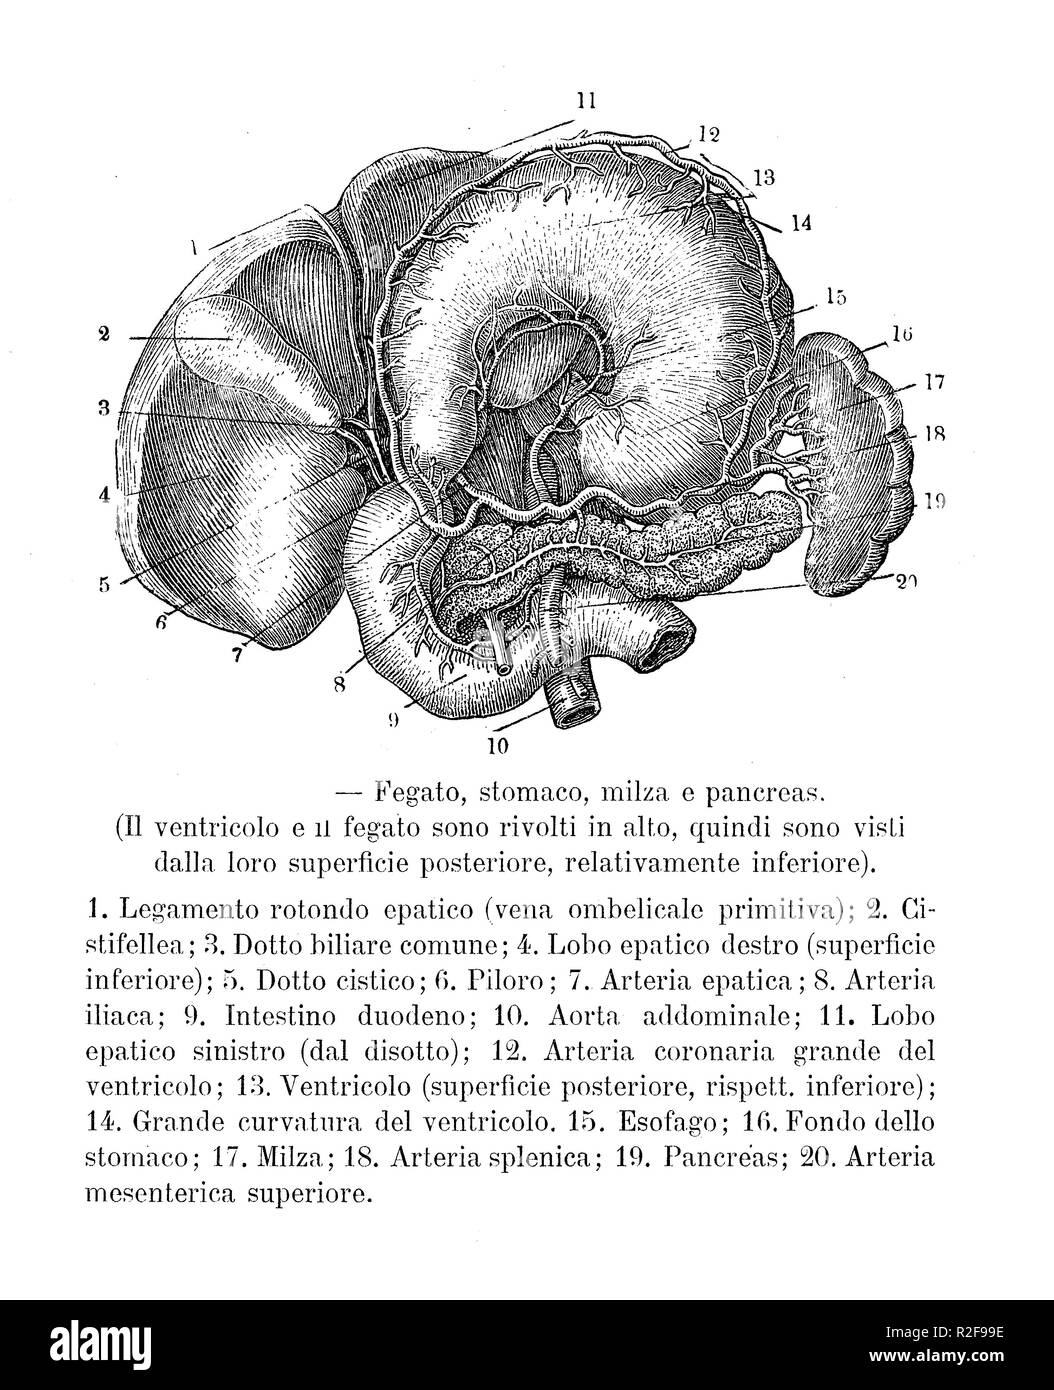 Vintage illustration de l'anatomie, les organes abdominaux : foie, estomac, rate et pancréas italien avec des descriptions anatomiques Banque D'Images